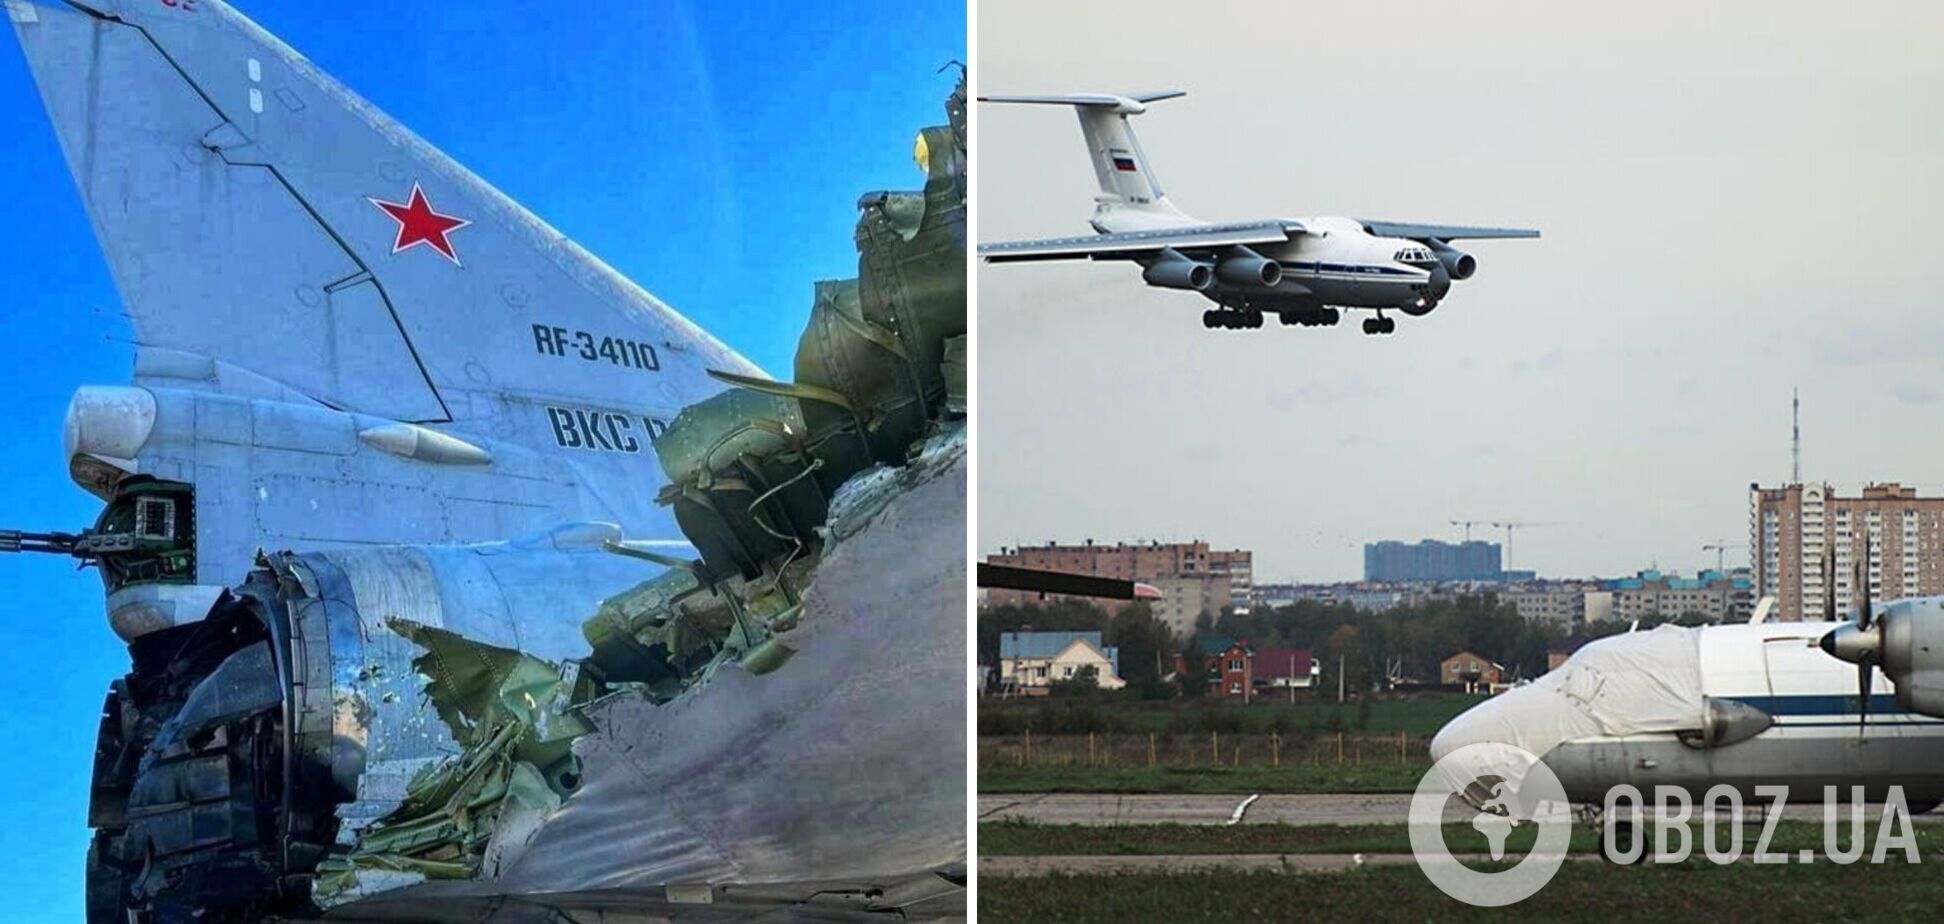 З’явилися перші фото російського бомбардувальника Ту-22М3 і паливозаправника на аеродромі 'Дягілєво' біля Рязані, який було уражено БПЛА